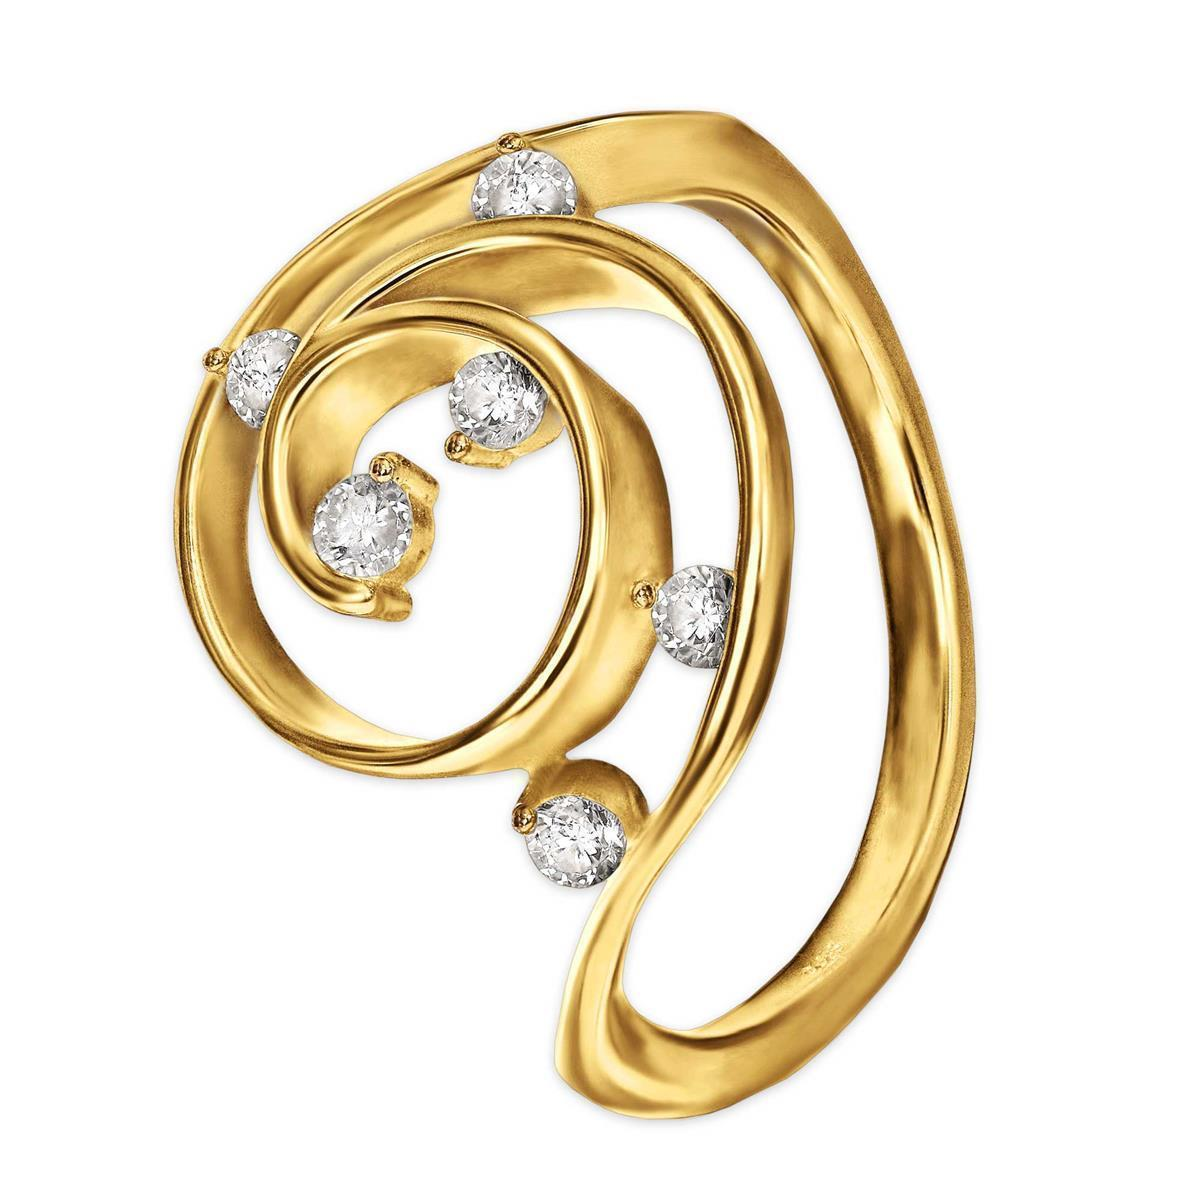 Goldener Ring Florales Muster als Kringel viele Zirkonia 925 Sterling Silber